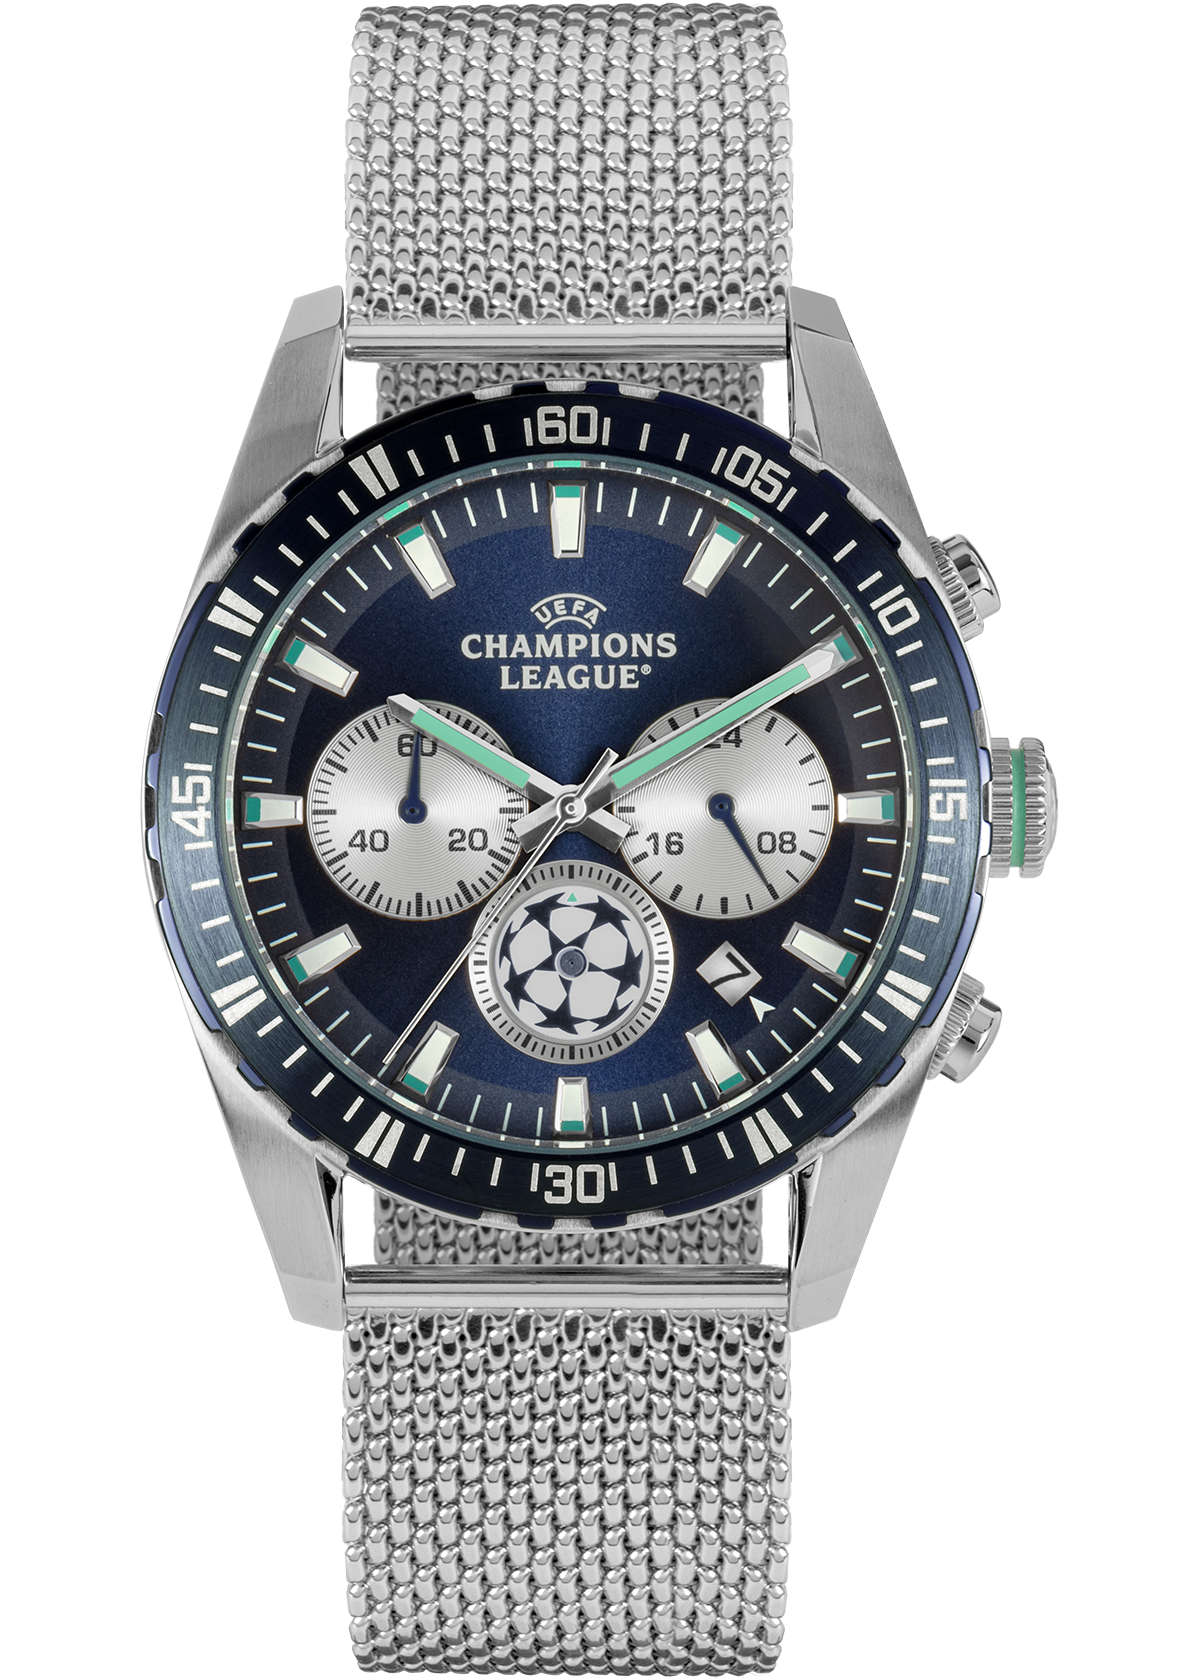 WRIST WATCH, chronograph, quartz, steel, date, champion virtue. Clocks &  Watches - Wristwatches - Auctionet